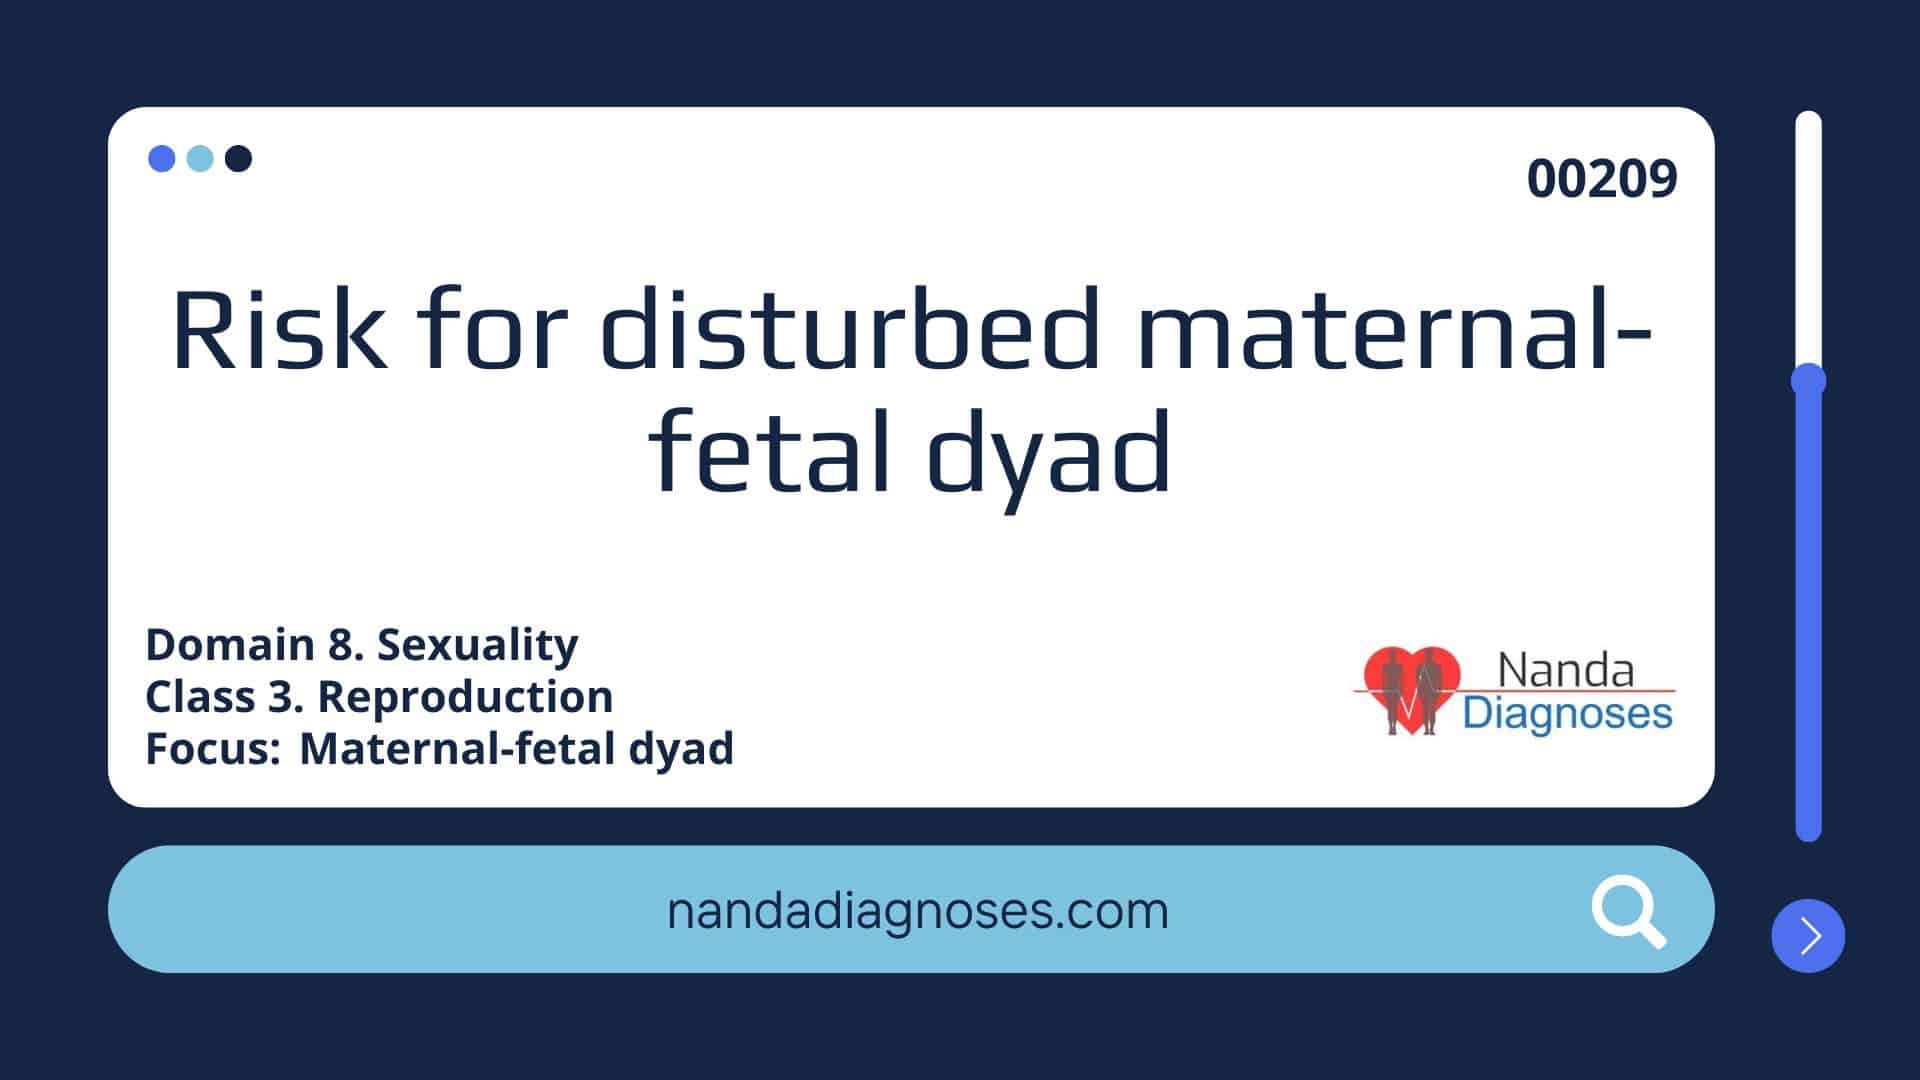 Risk for disturbed maternal-fetal dyad